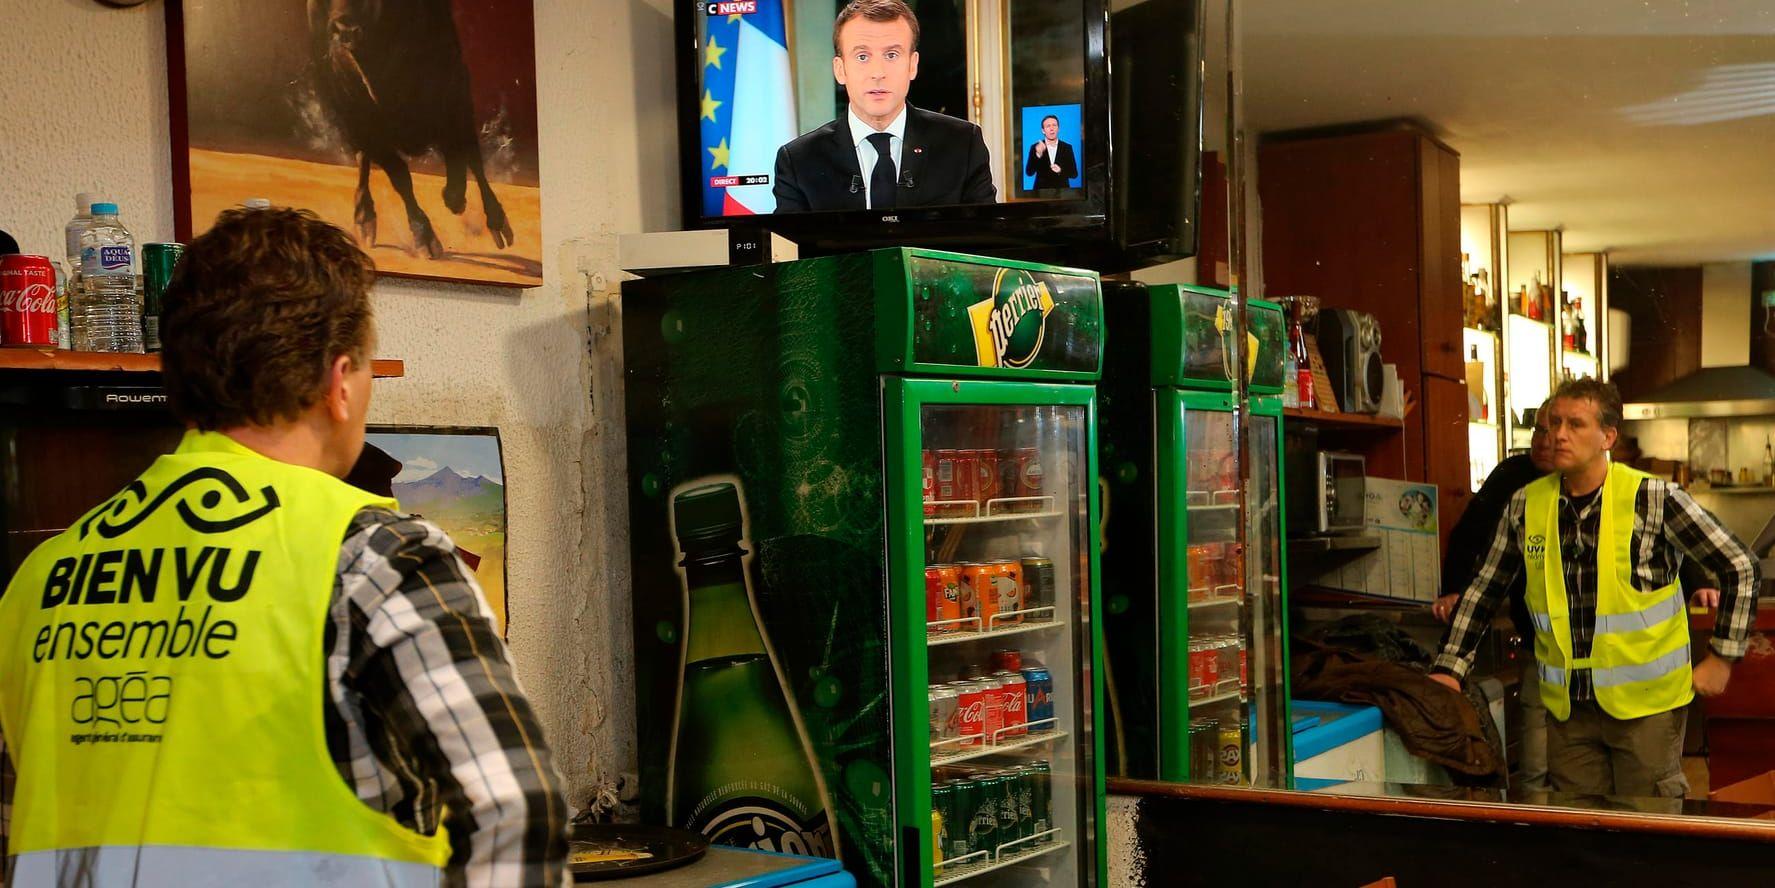 Yohann Piedagnel i Hendaye, sydvästra Frankrike, ser Macrons hett efterlängtade tv-tal. Presidenten går igenom sin värsta politiska kris någonsin.